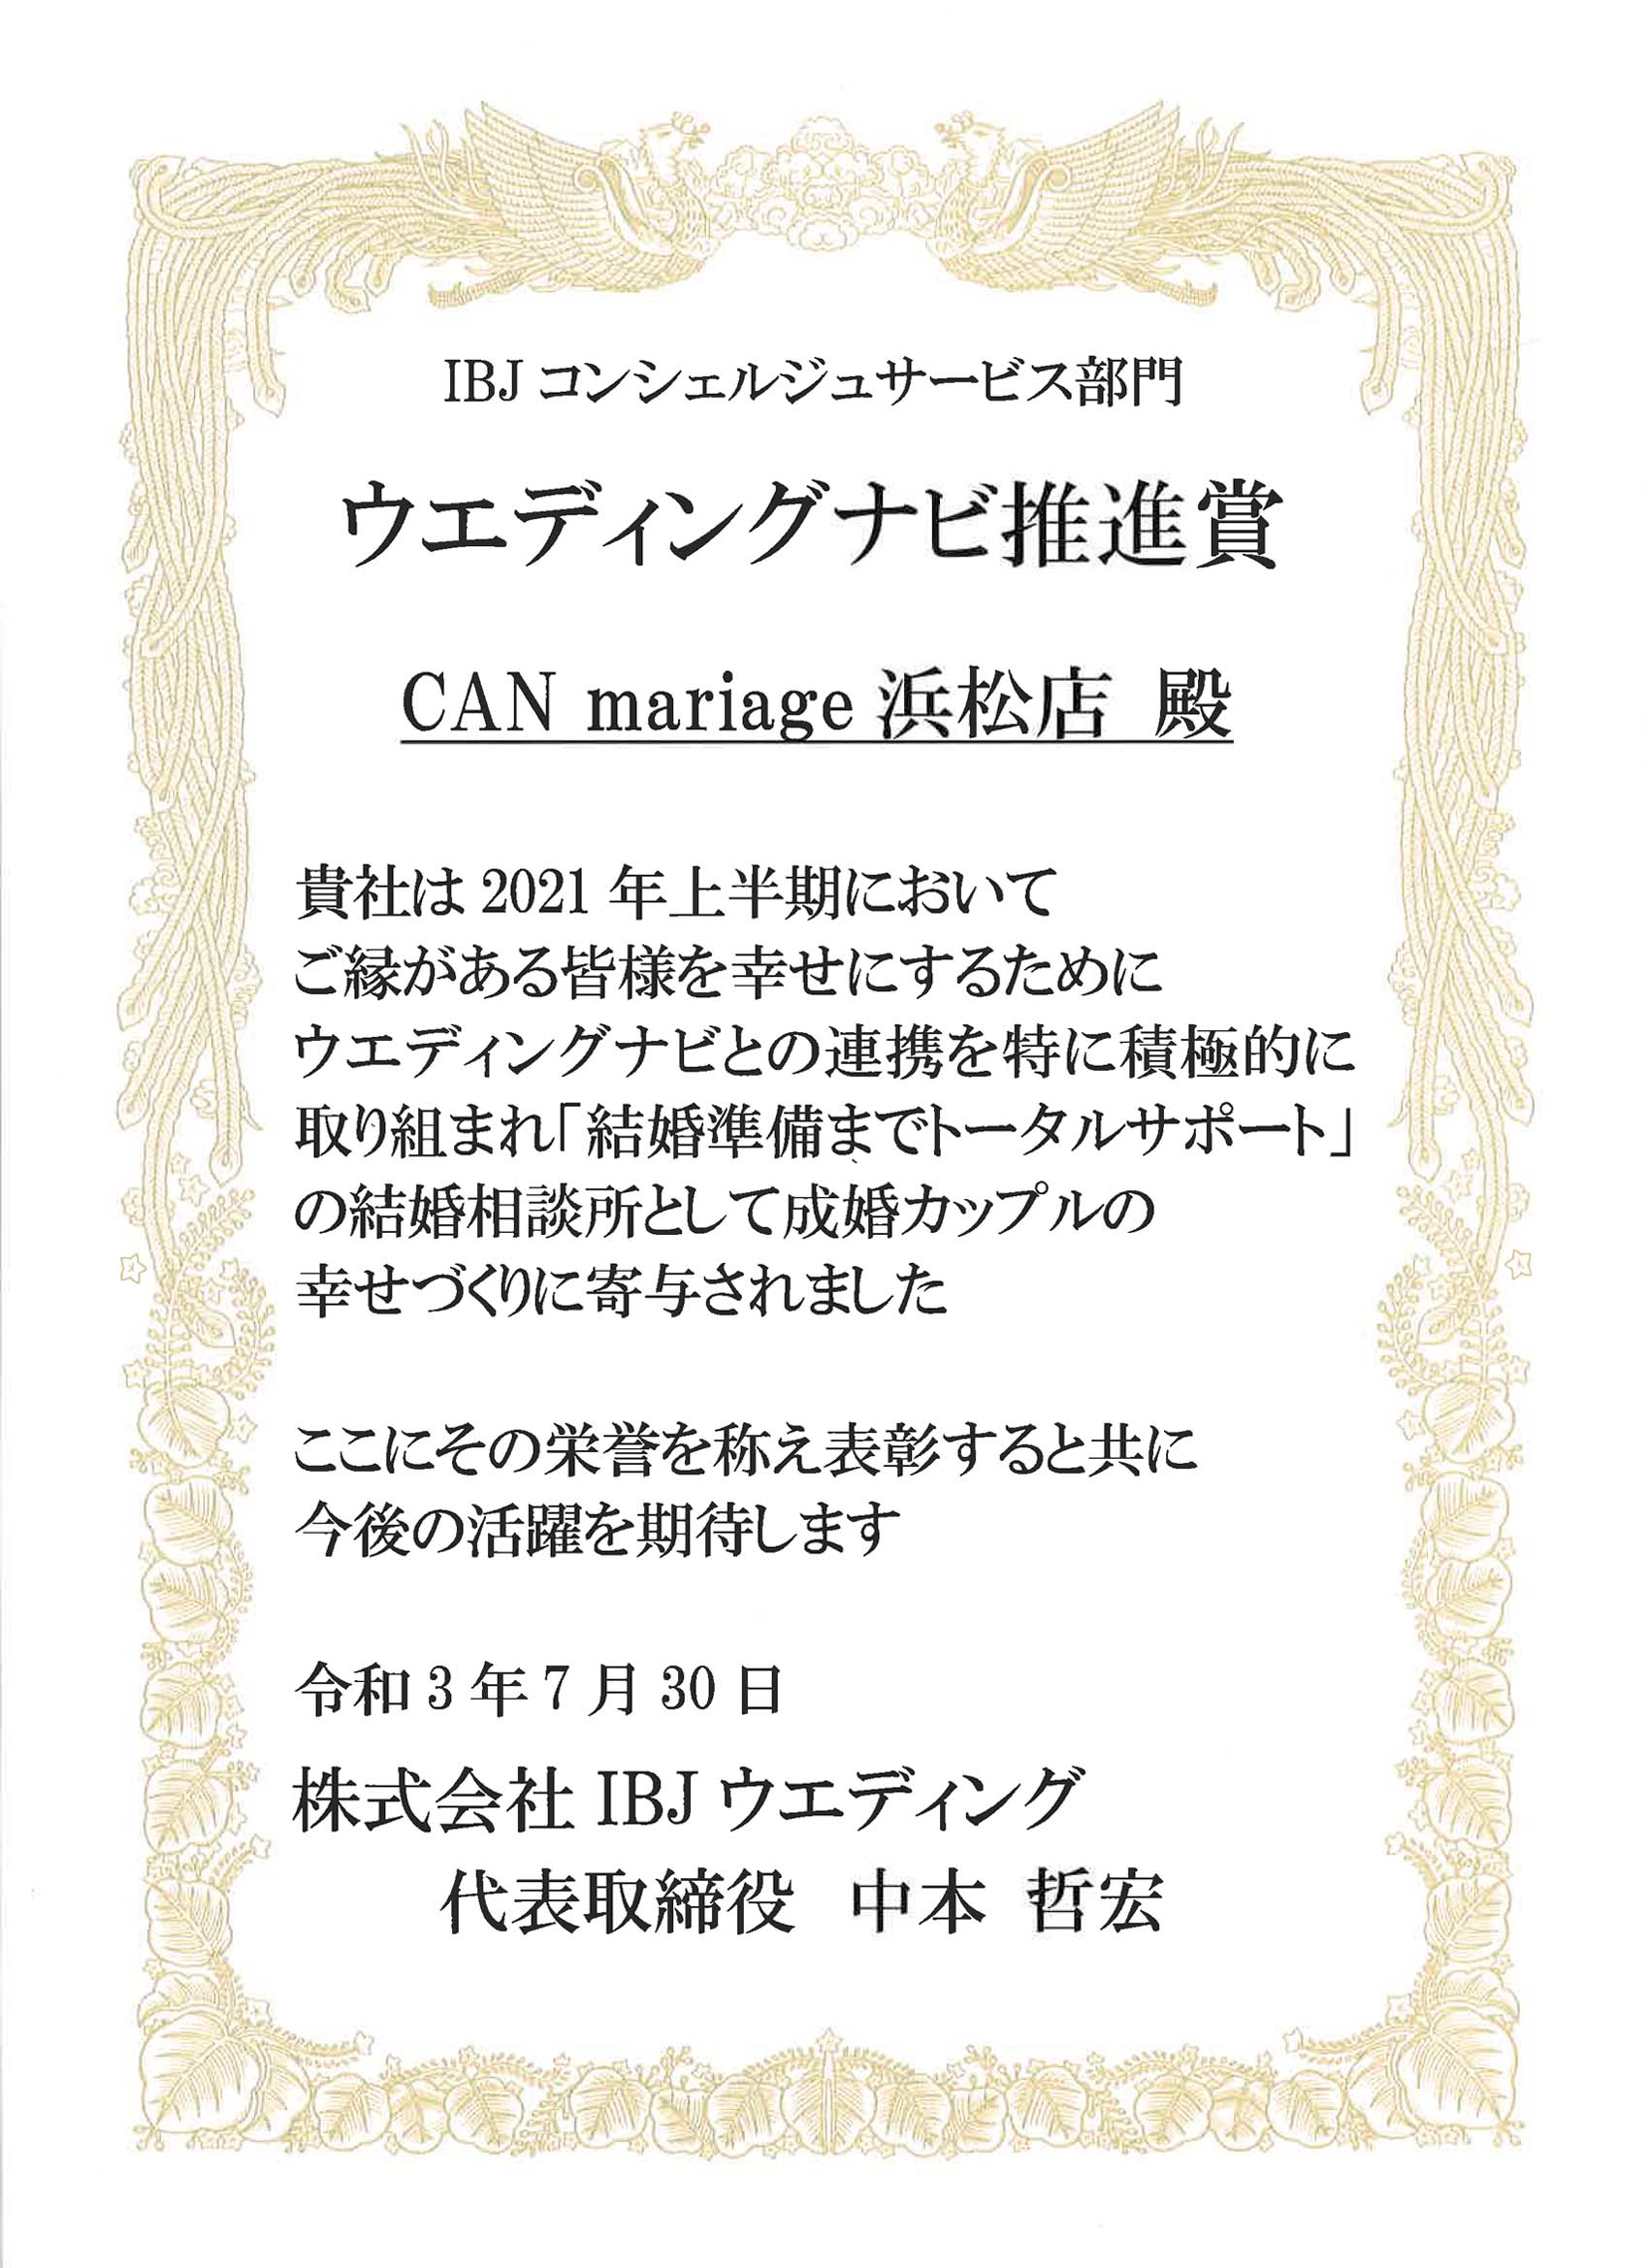 静岡浜松店 2021年 上半期 ウエディングナビ推進賞(大手結婚相談所部門)を受賞しました。